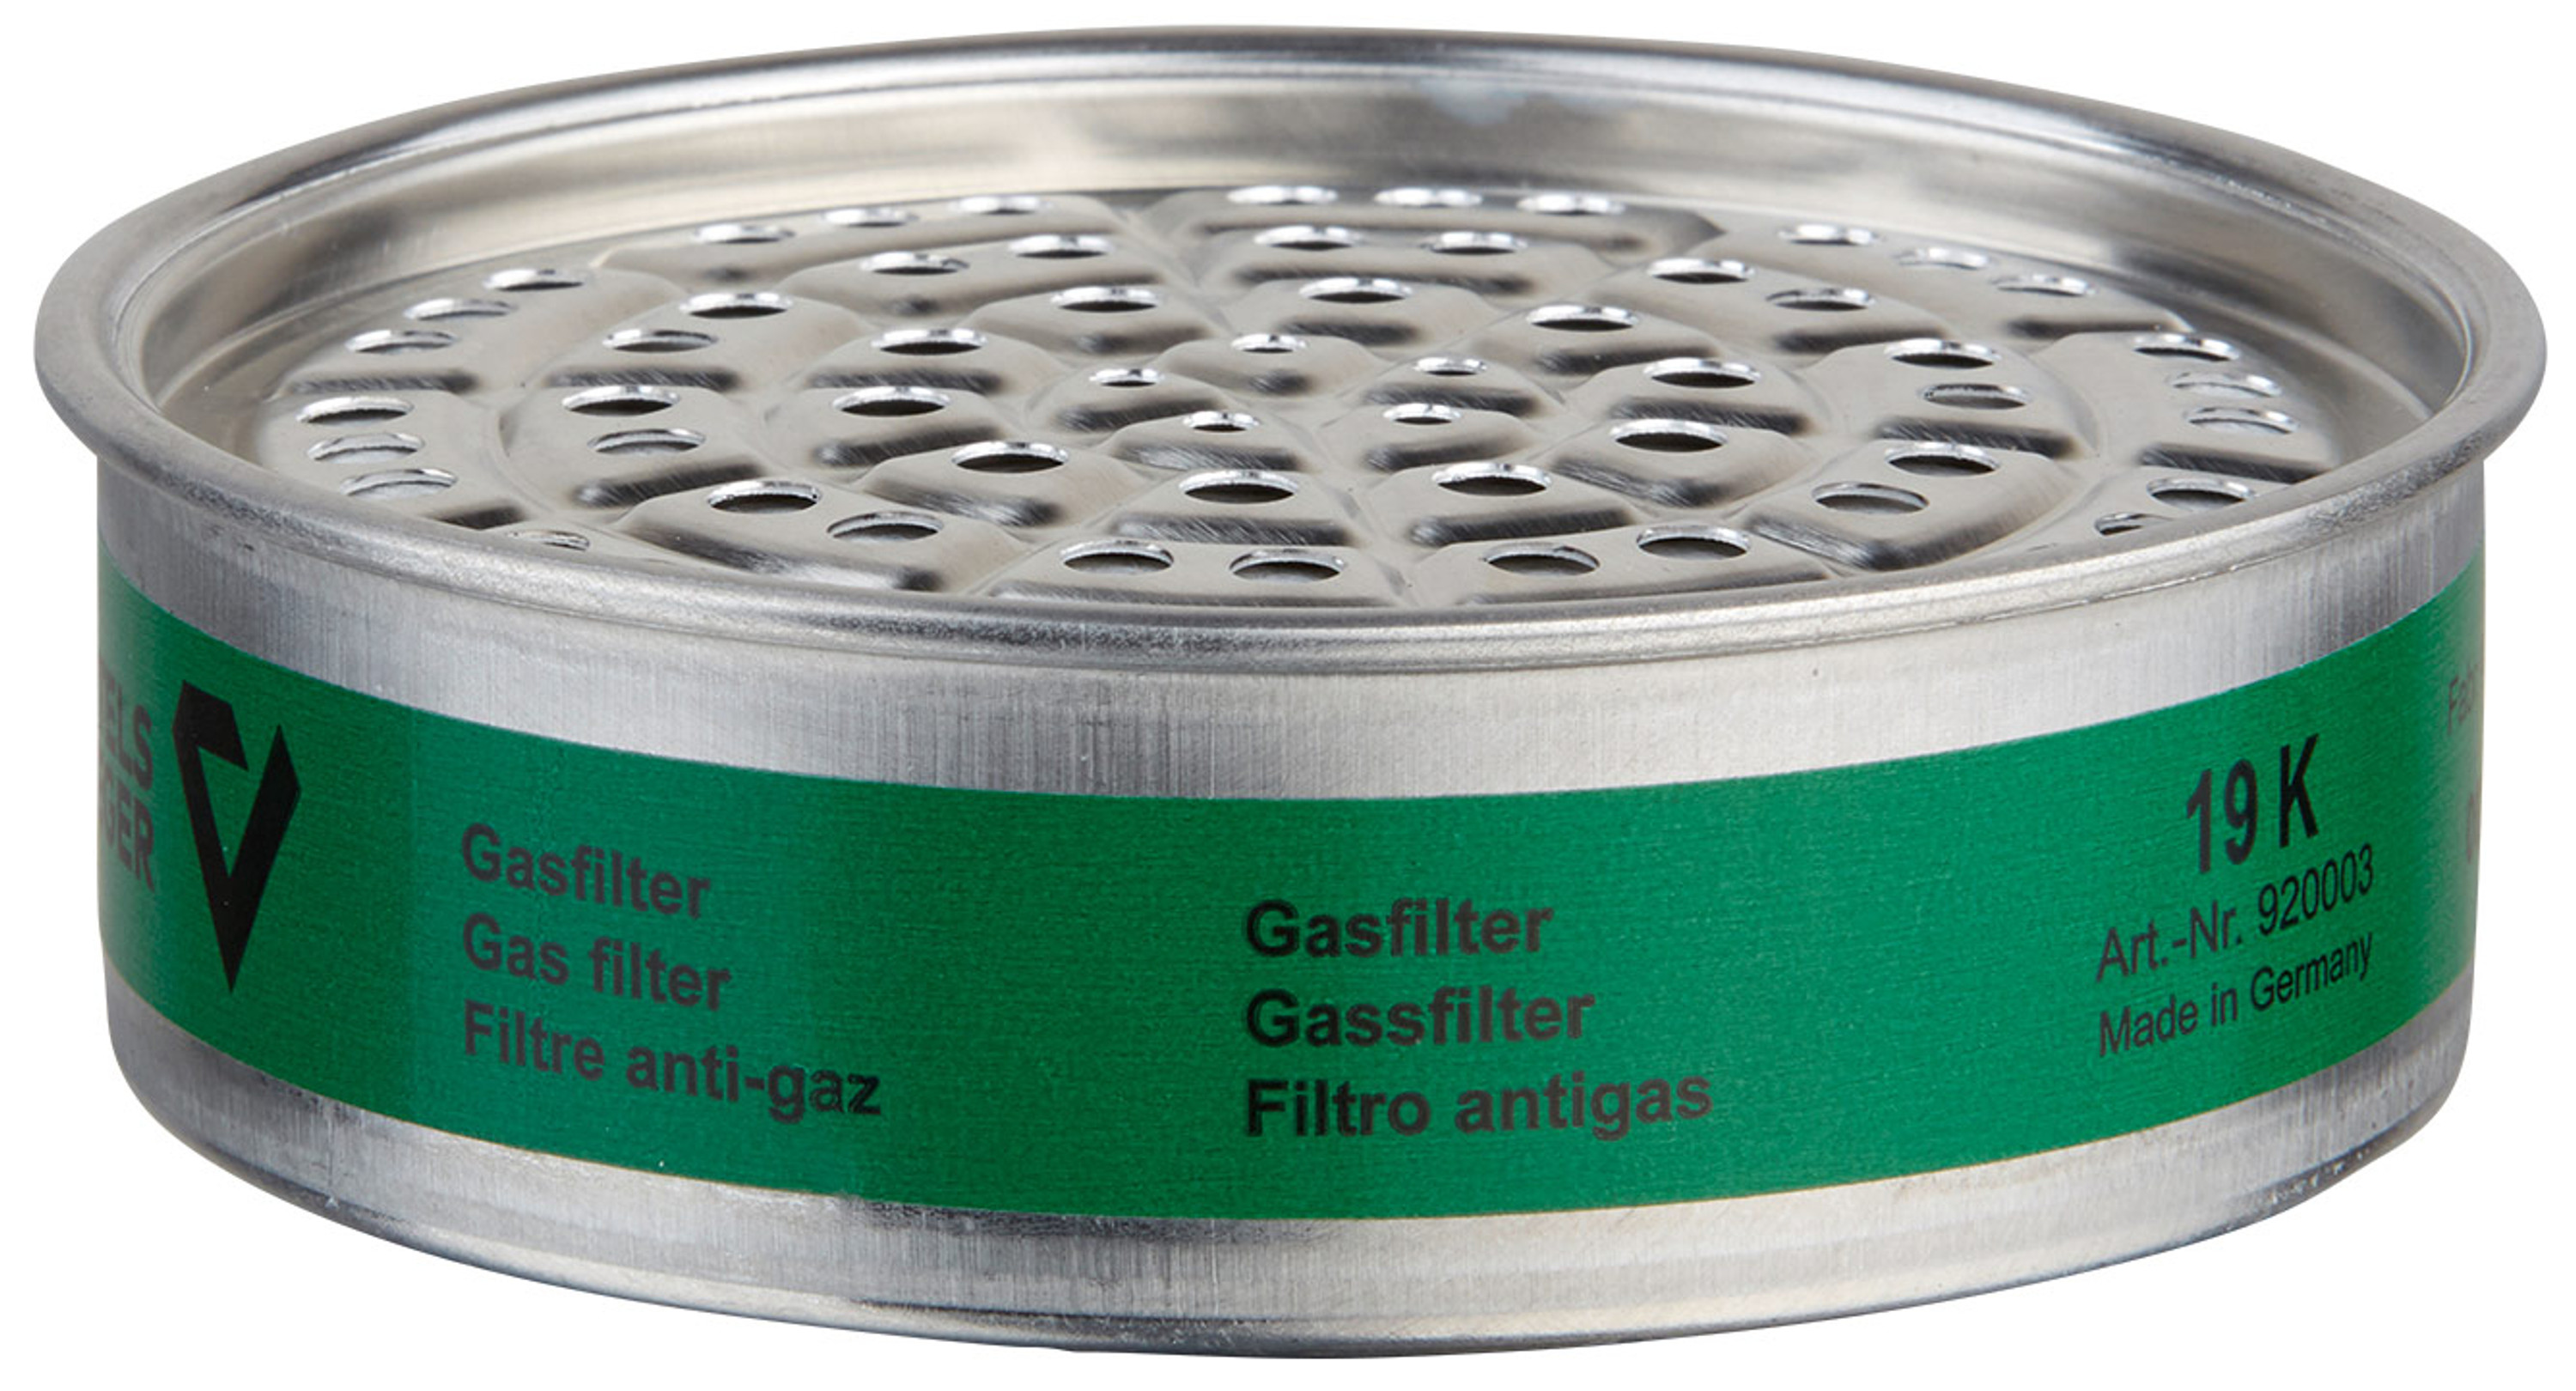 Gasfilter 19 K (K1), 5 Stk.